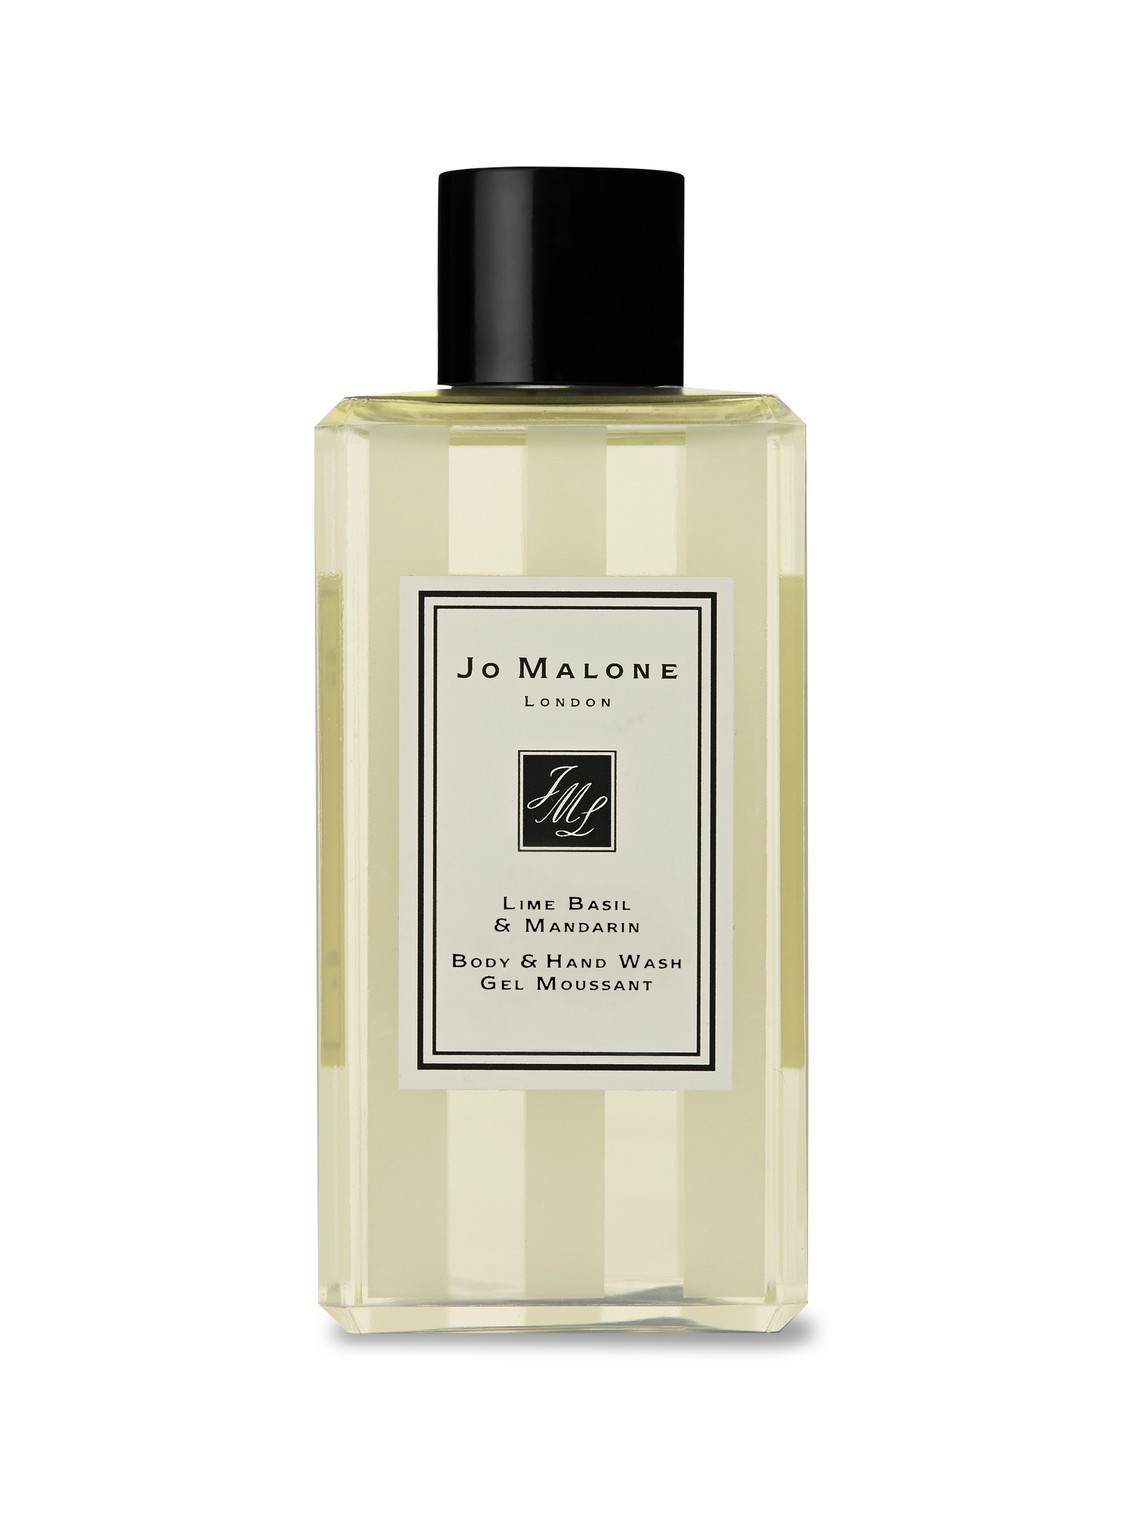 Jo Malone London Lime Basil & Mandarin Body & Hand Wash, 100ml In White